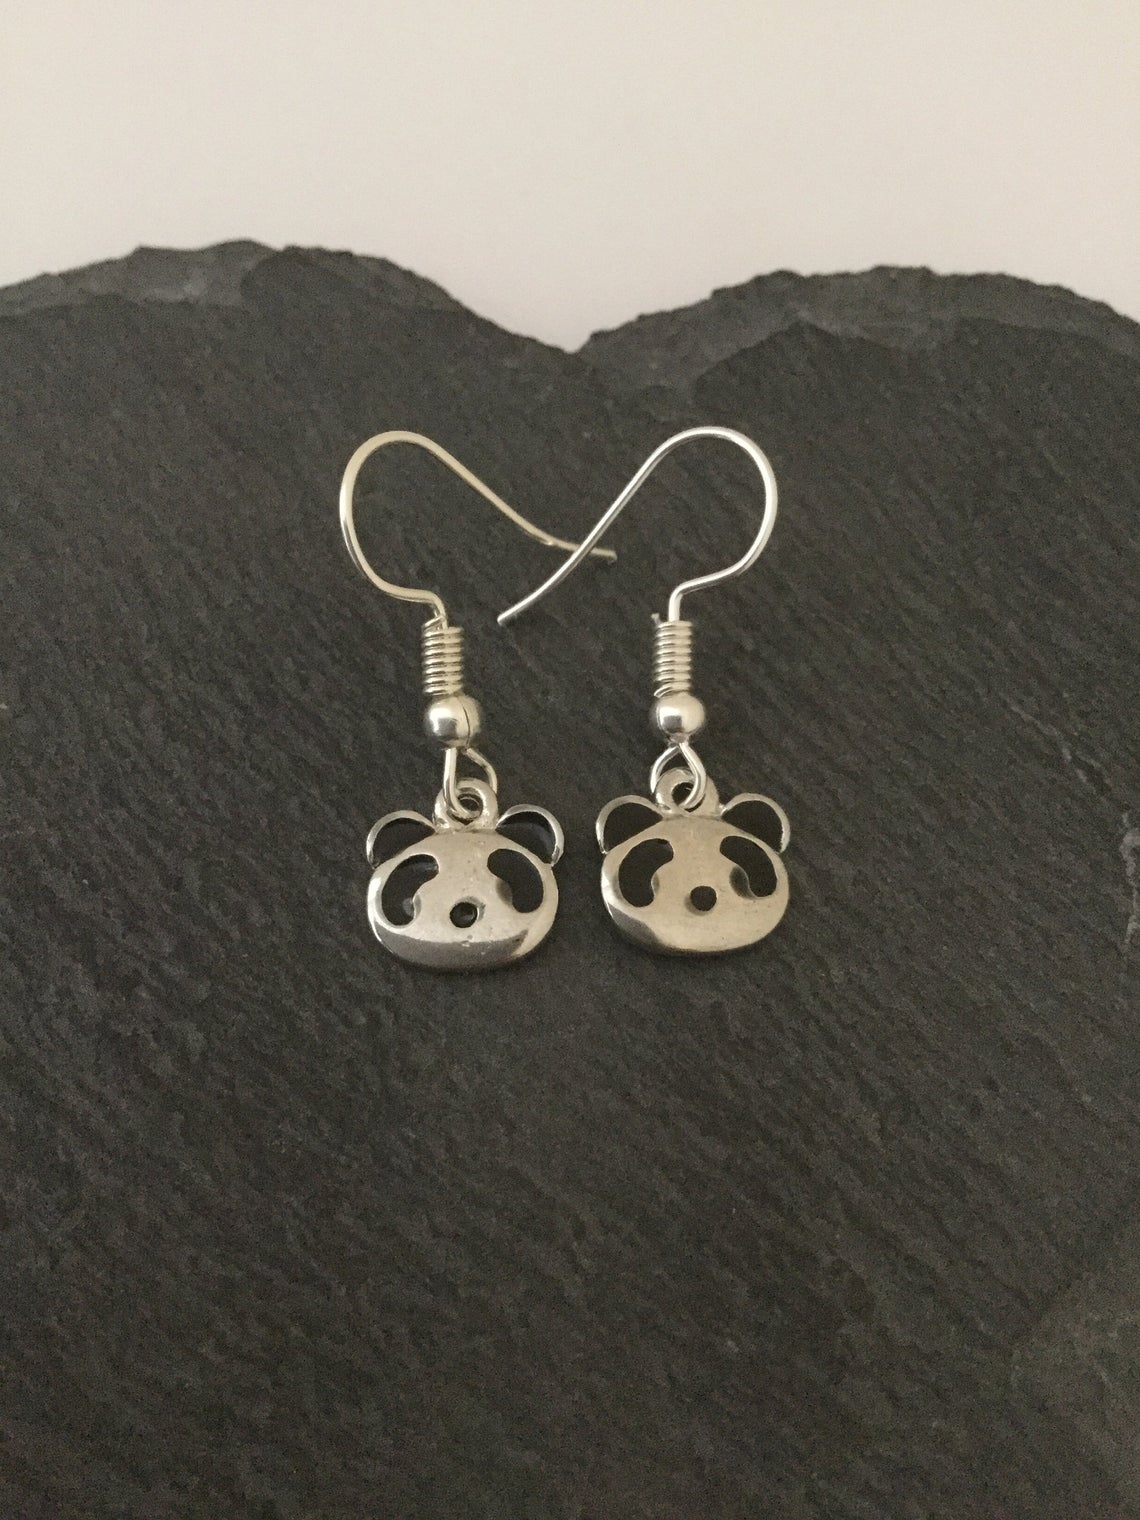 Classy Pair of Panda Earrings